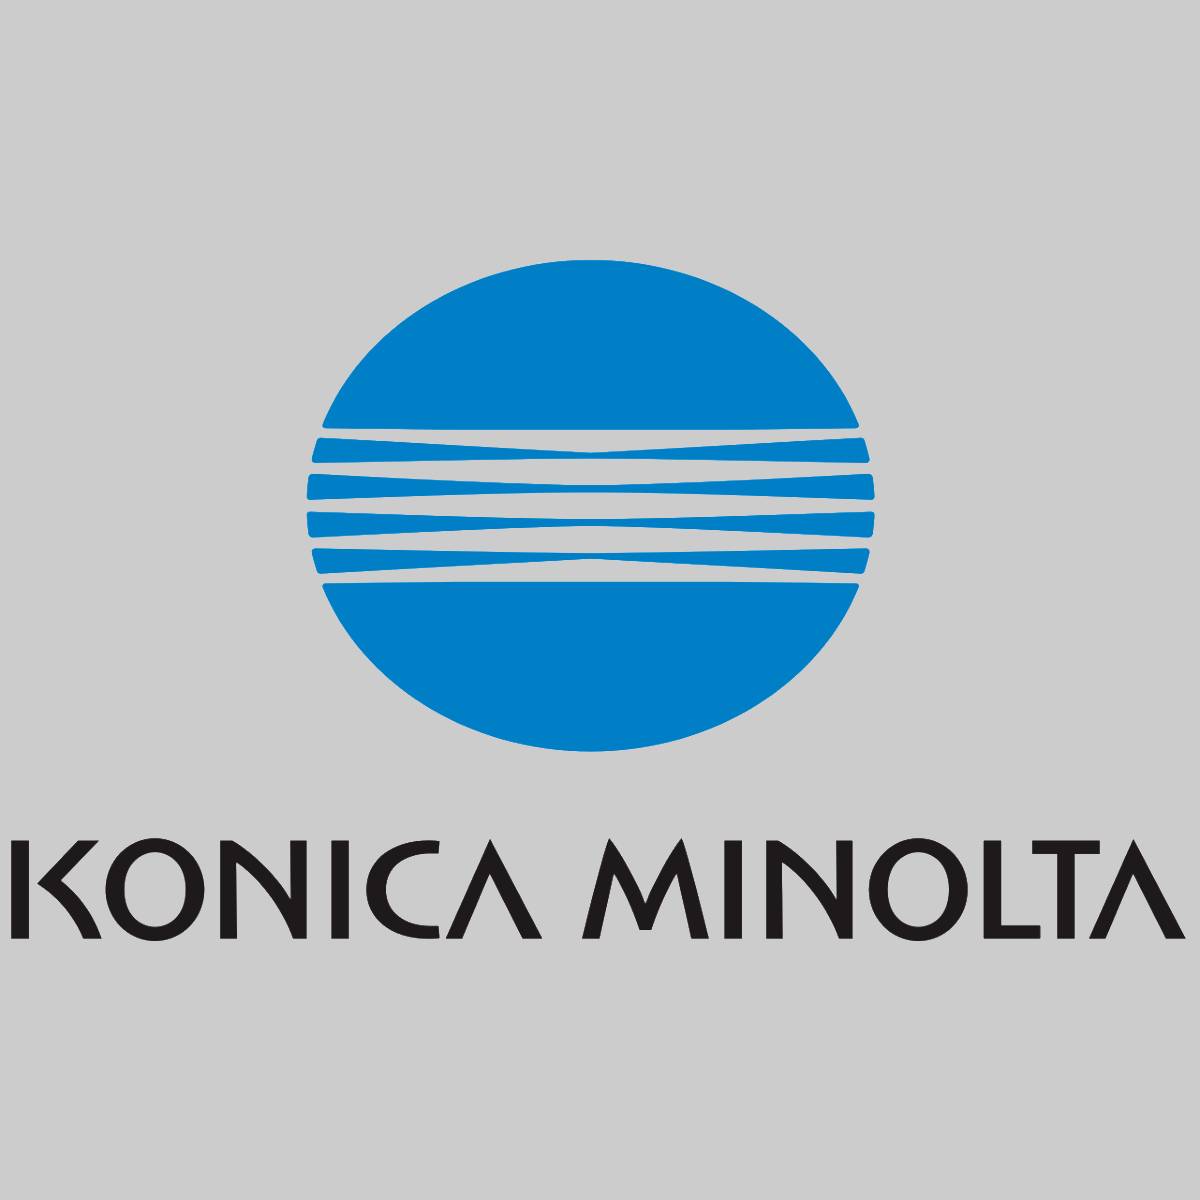 "Original Konica Minolta DV616K Développeur Noir A5E7600 pour Bizhub Press C1085 1